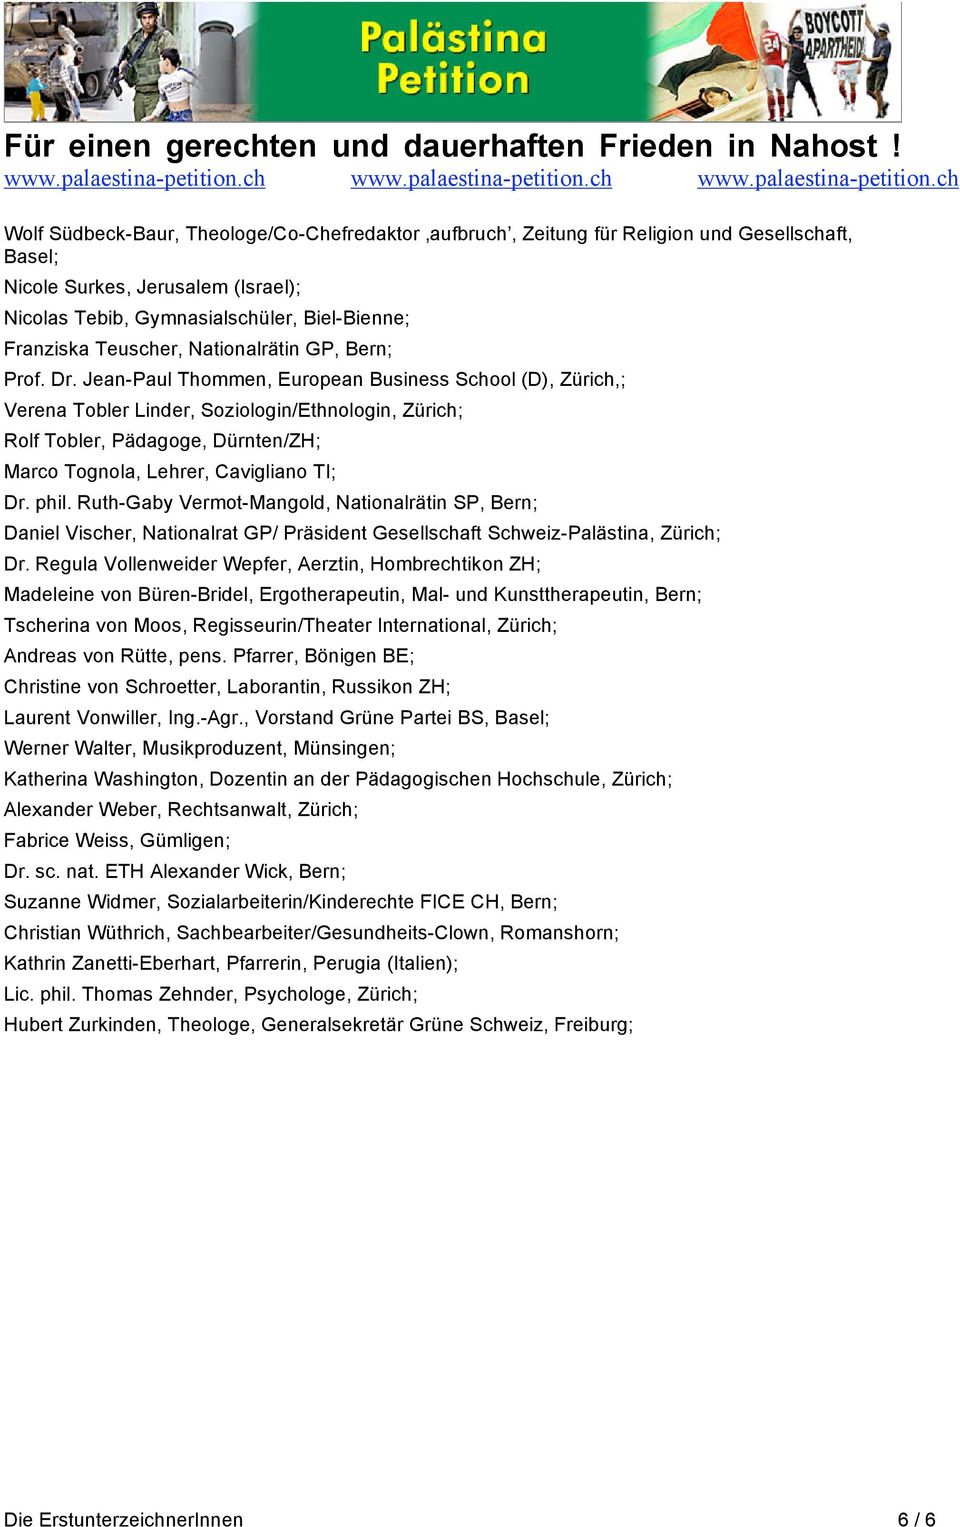 Jean-Paul Thommen, European Business School (D), Zürich,; Verena Tobler Linder, Soziologin/Ethnologin, Zürich; Rolf Tobler, Pädagoge, Dürnten/ZH; Marco Tognola, Lehrer, Cavigliano TI; Dr. phil.